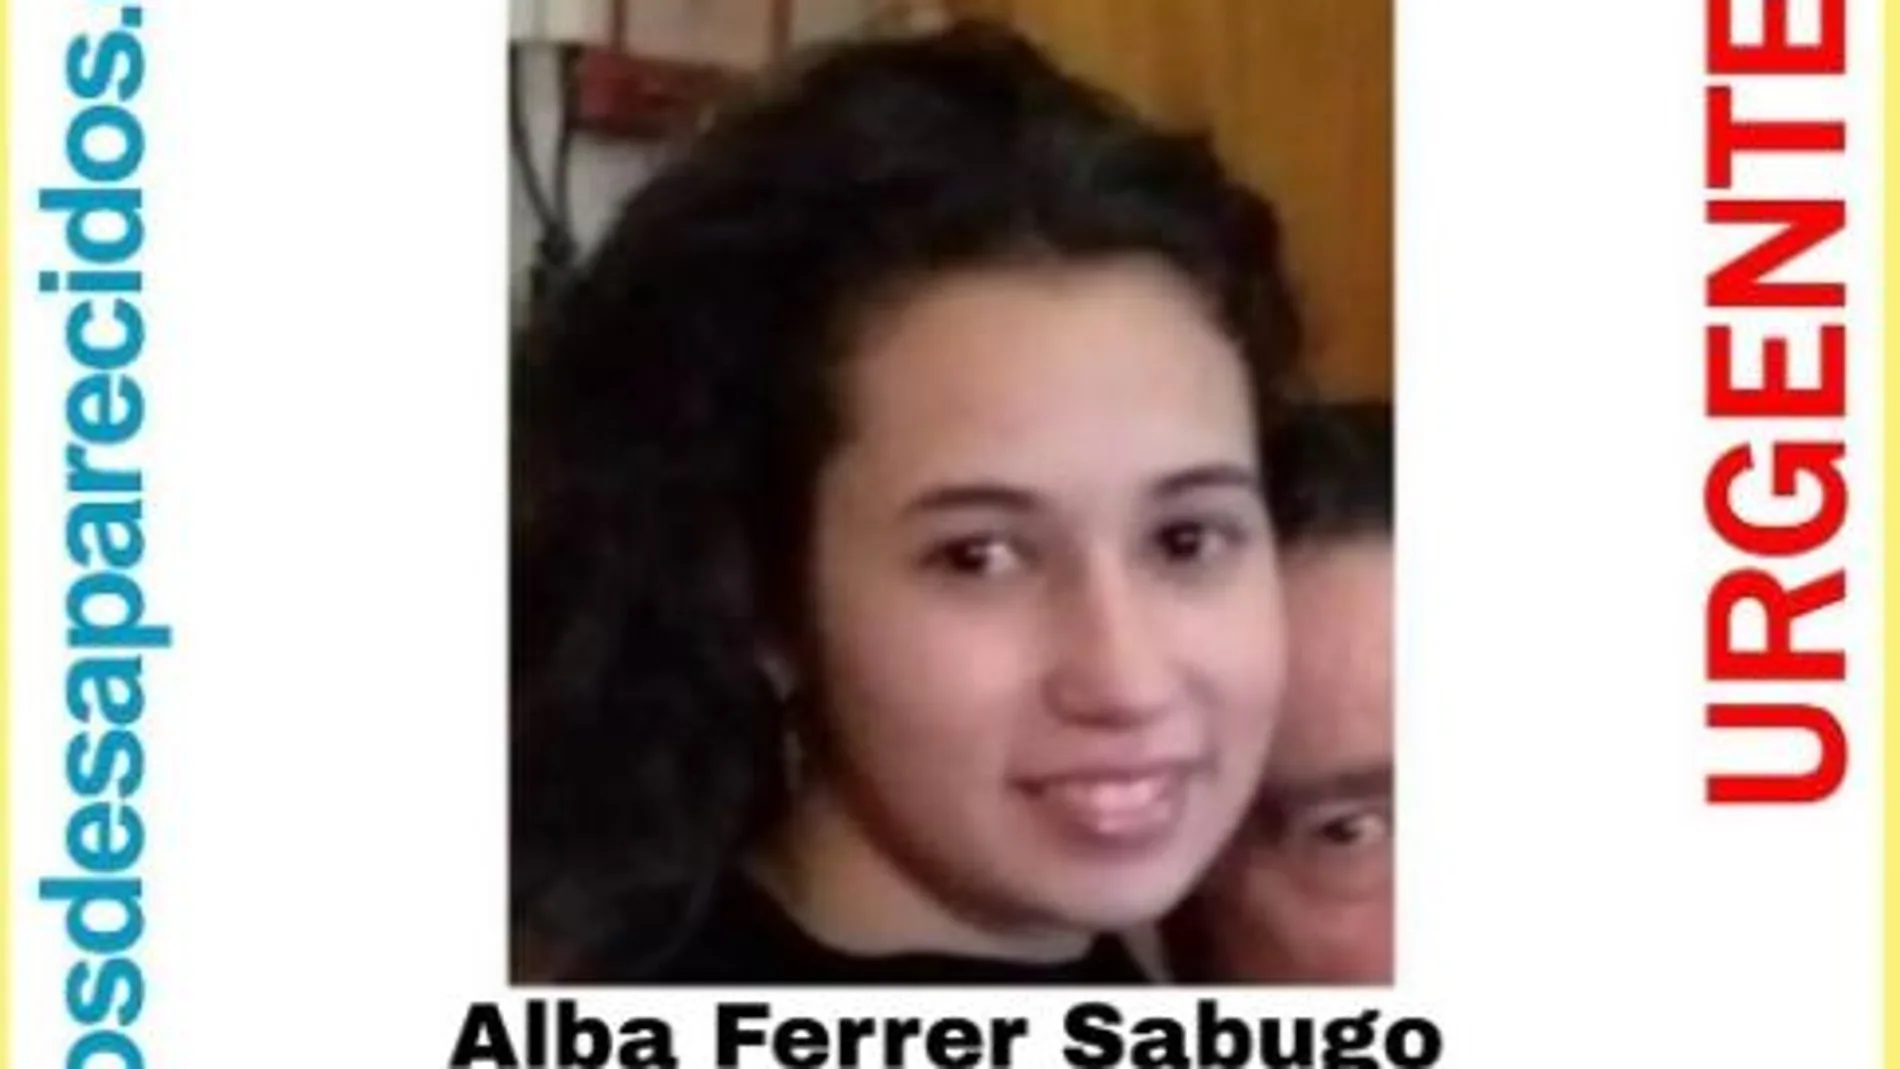 Foto de Alba Ferrer Sabugo, niña desaparecida en Palma el pasado mes de abril